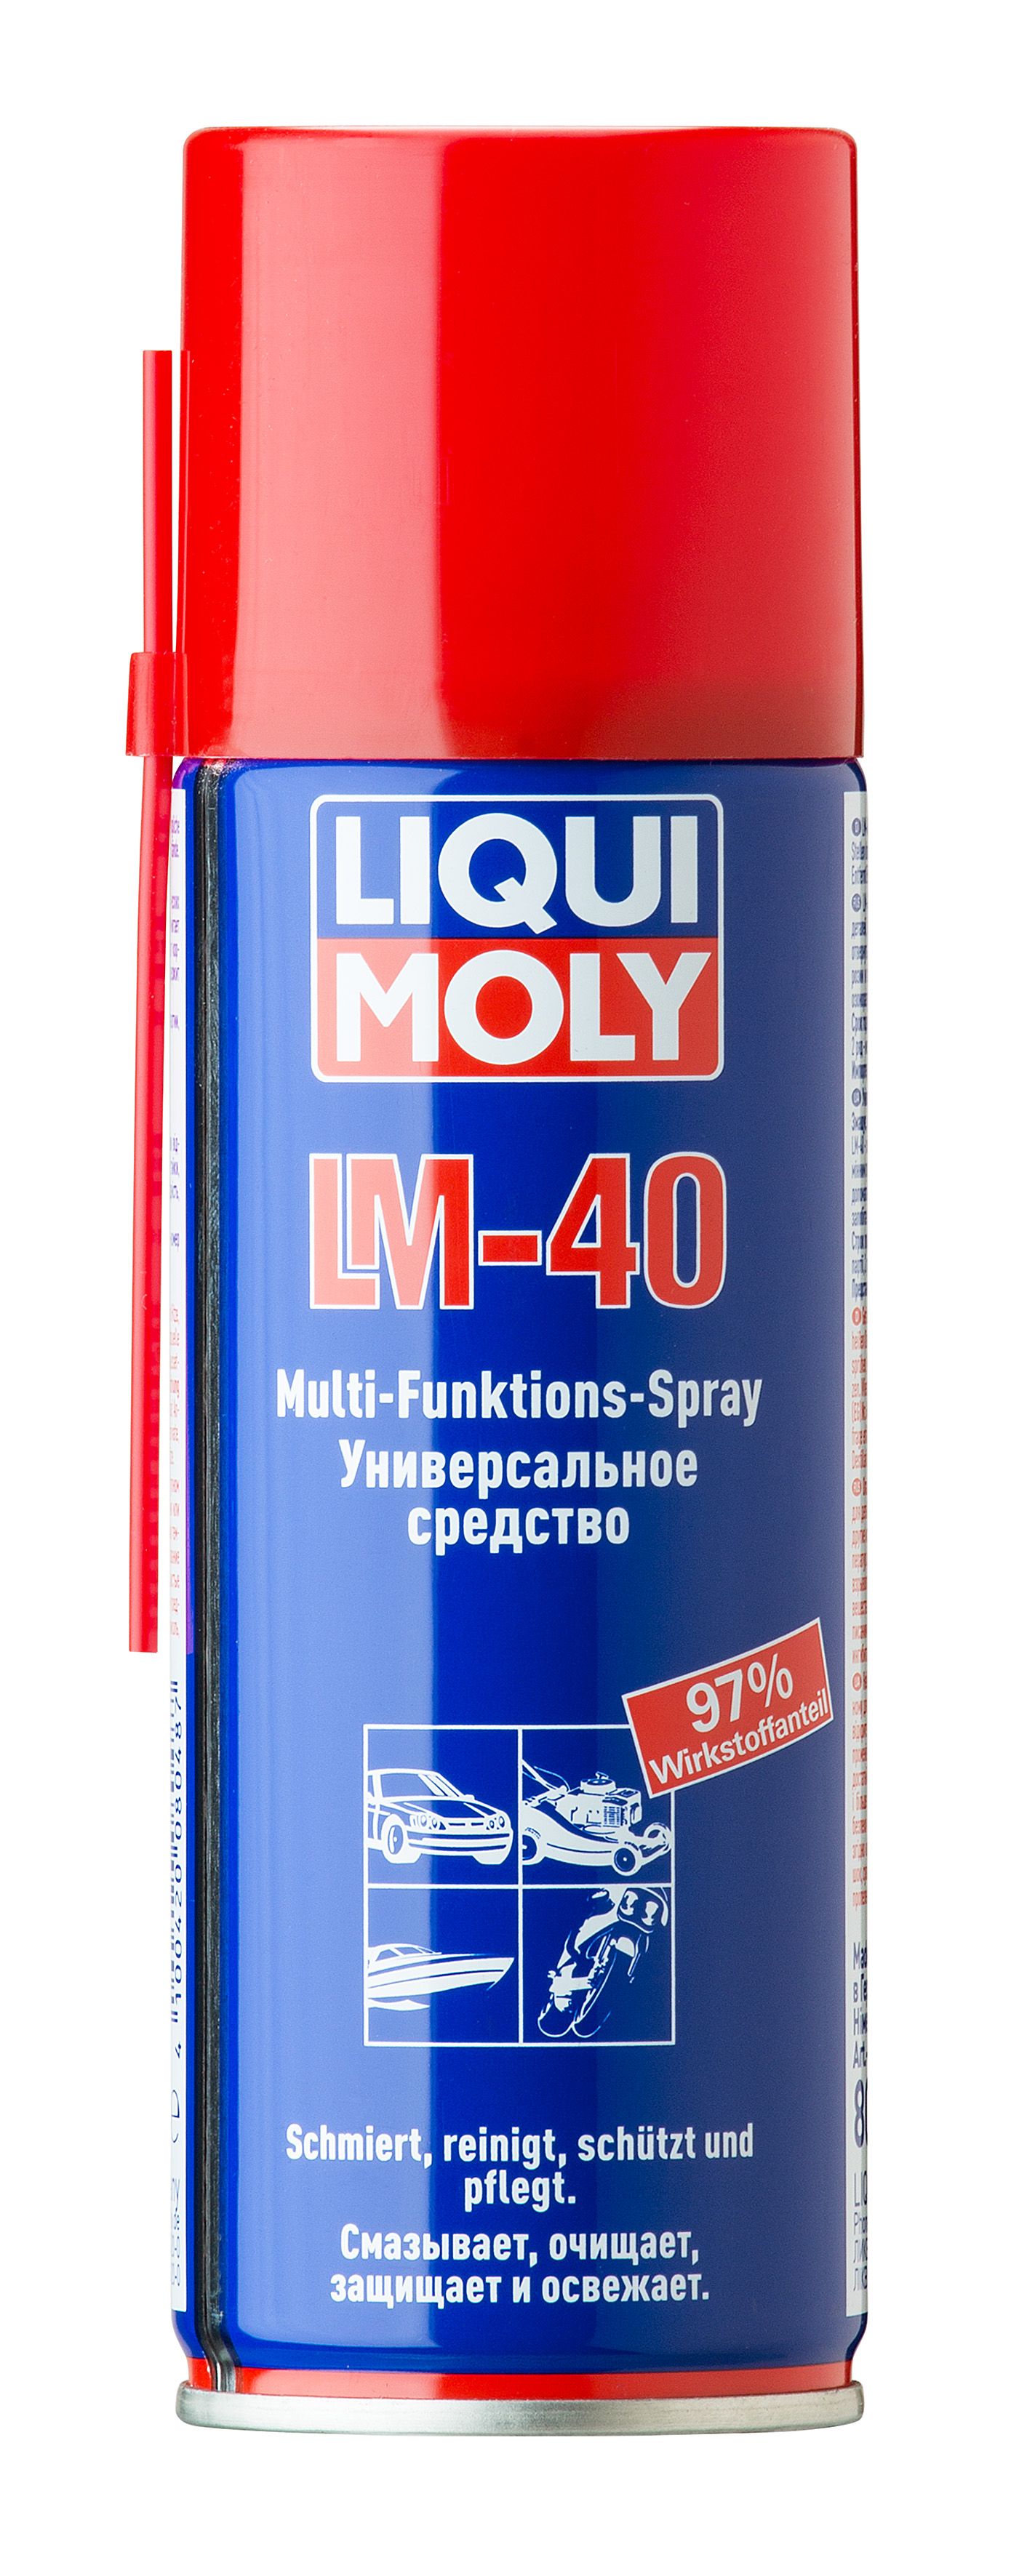 УниверсальноесредствоLM40LIQUIMOLYMulti-Funktions-Spray200мл